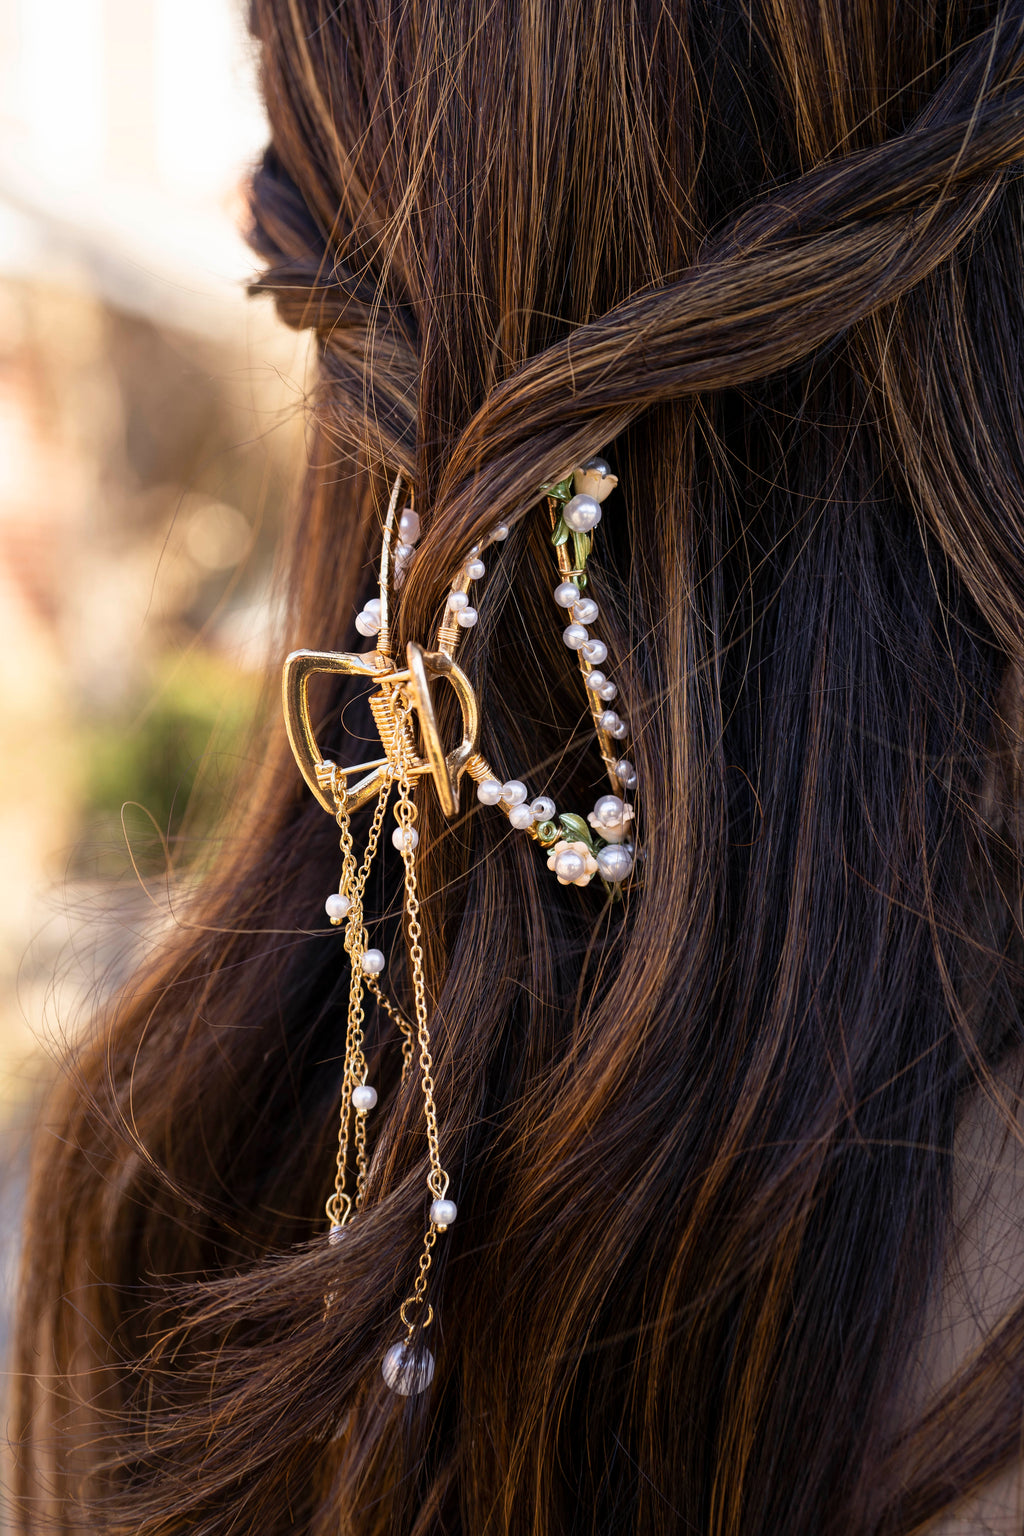 Our Lady's Bouquet Hair Clip - GABRIELLE ISABEL